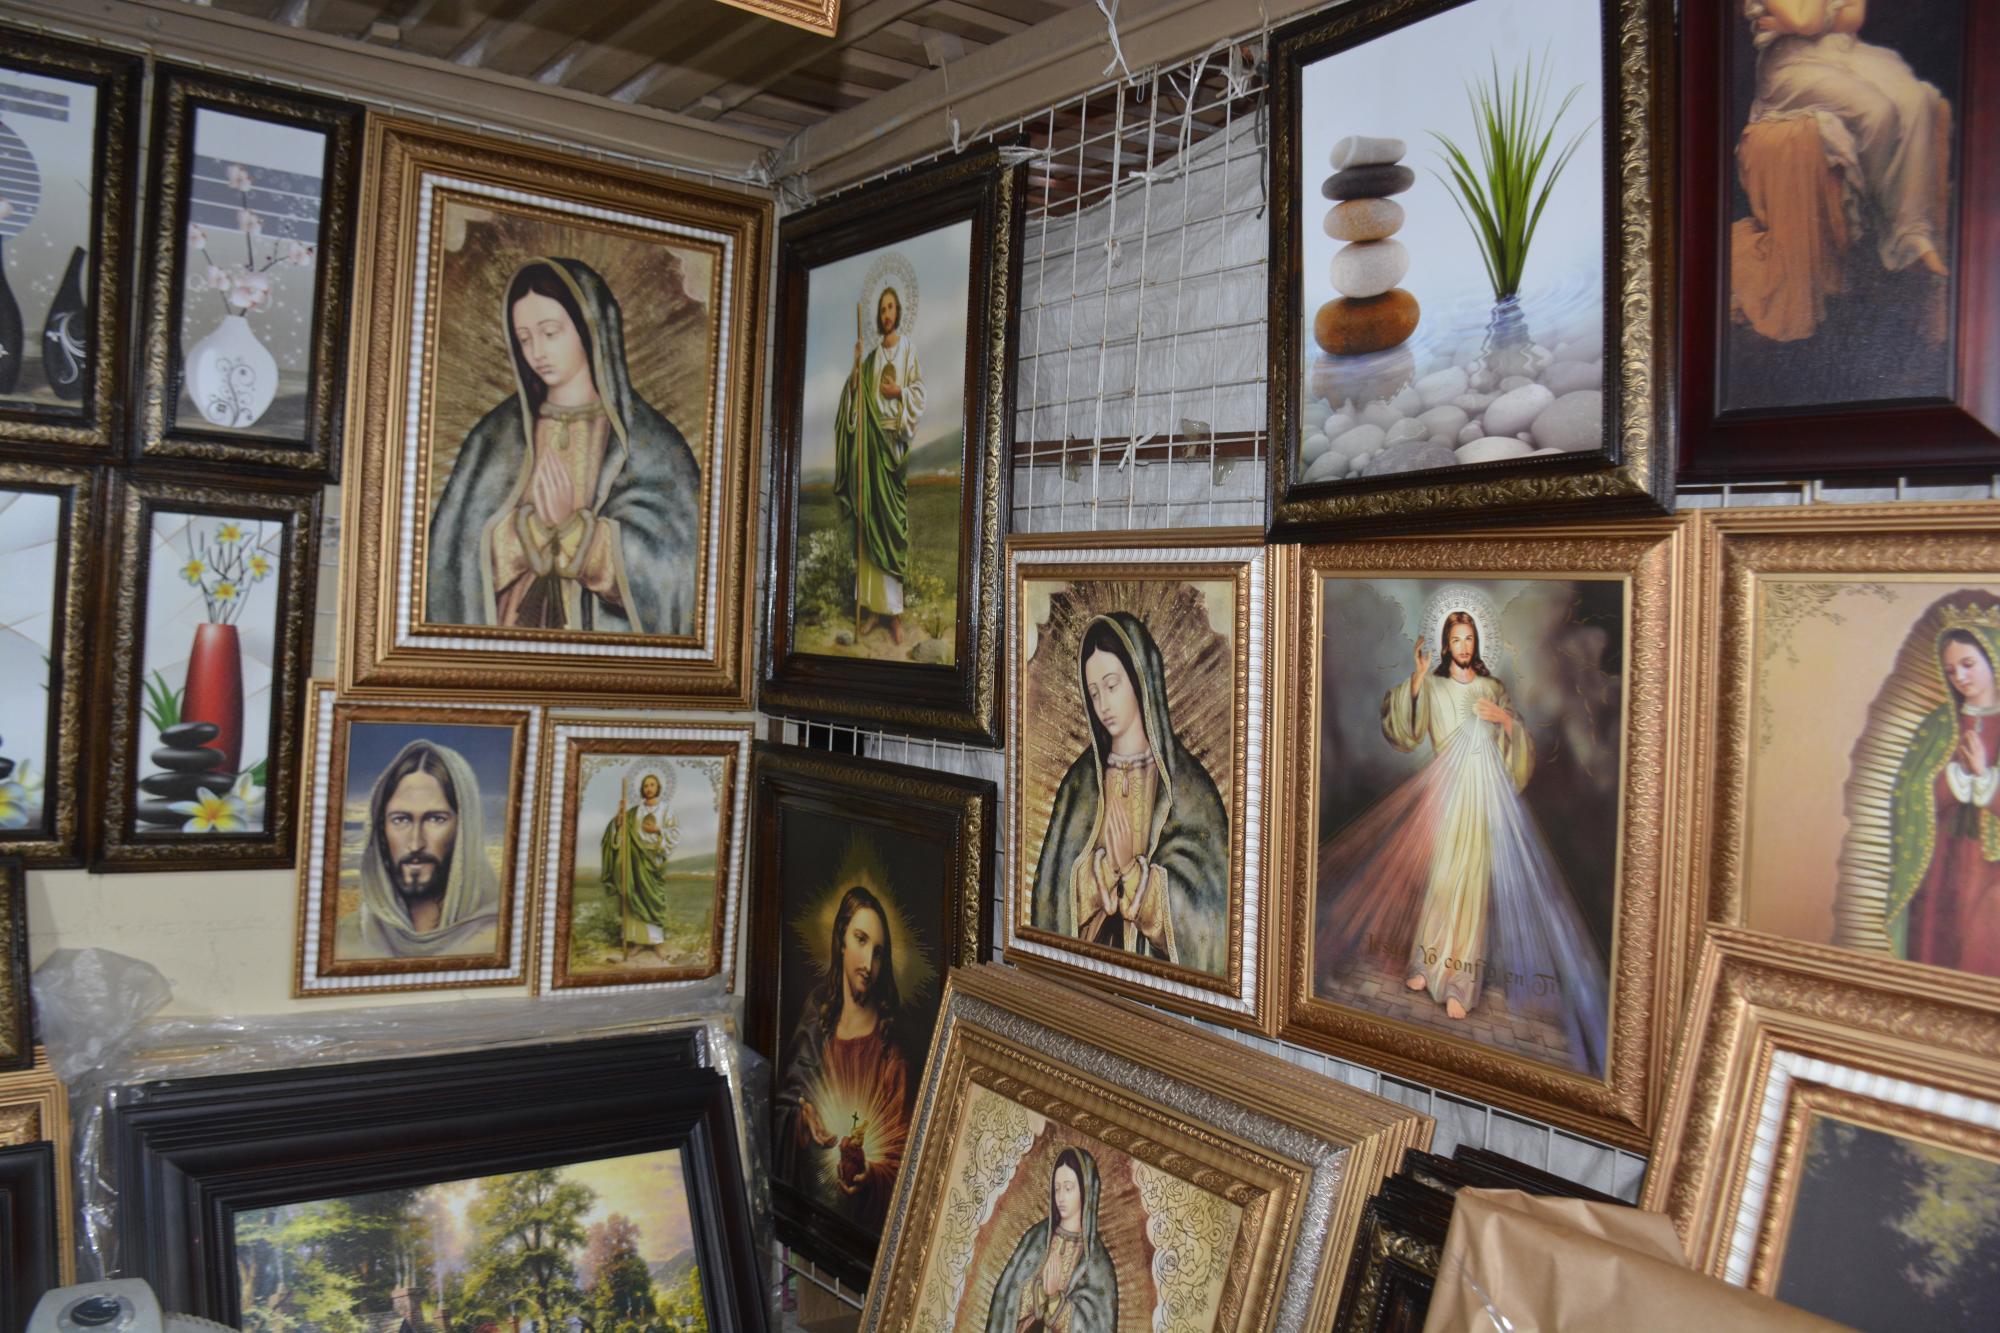 $!Uno de los puestos más conocidos es el que ofrece cuadros con paisajes e imágenes religiosas.